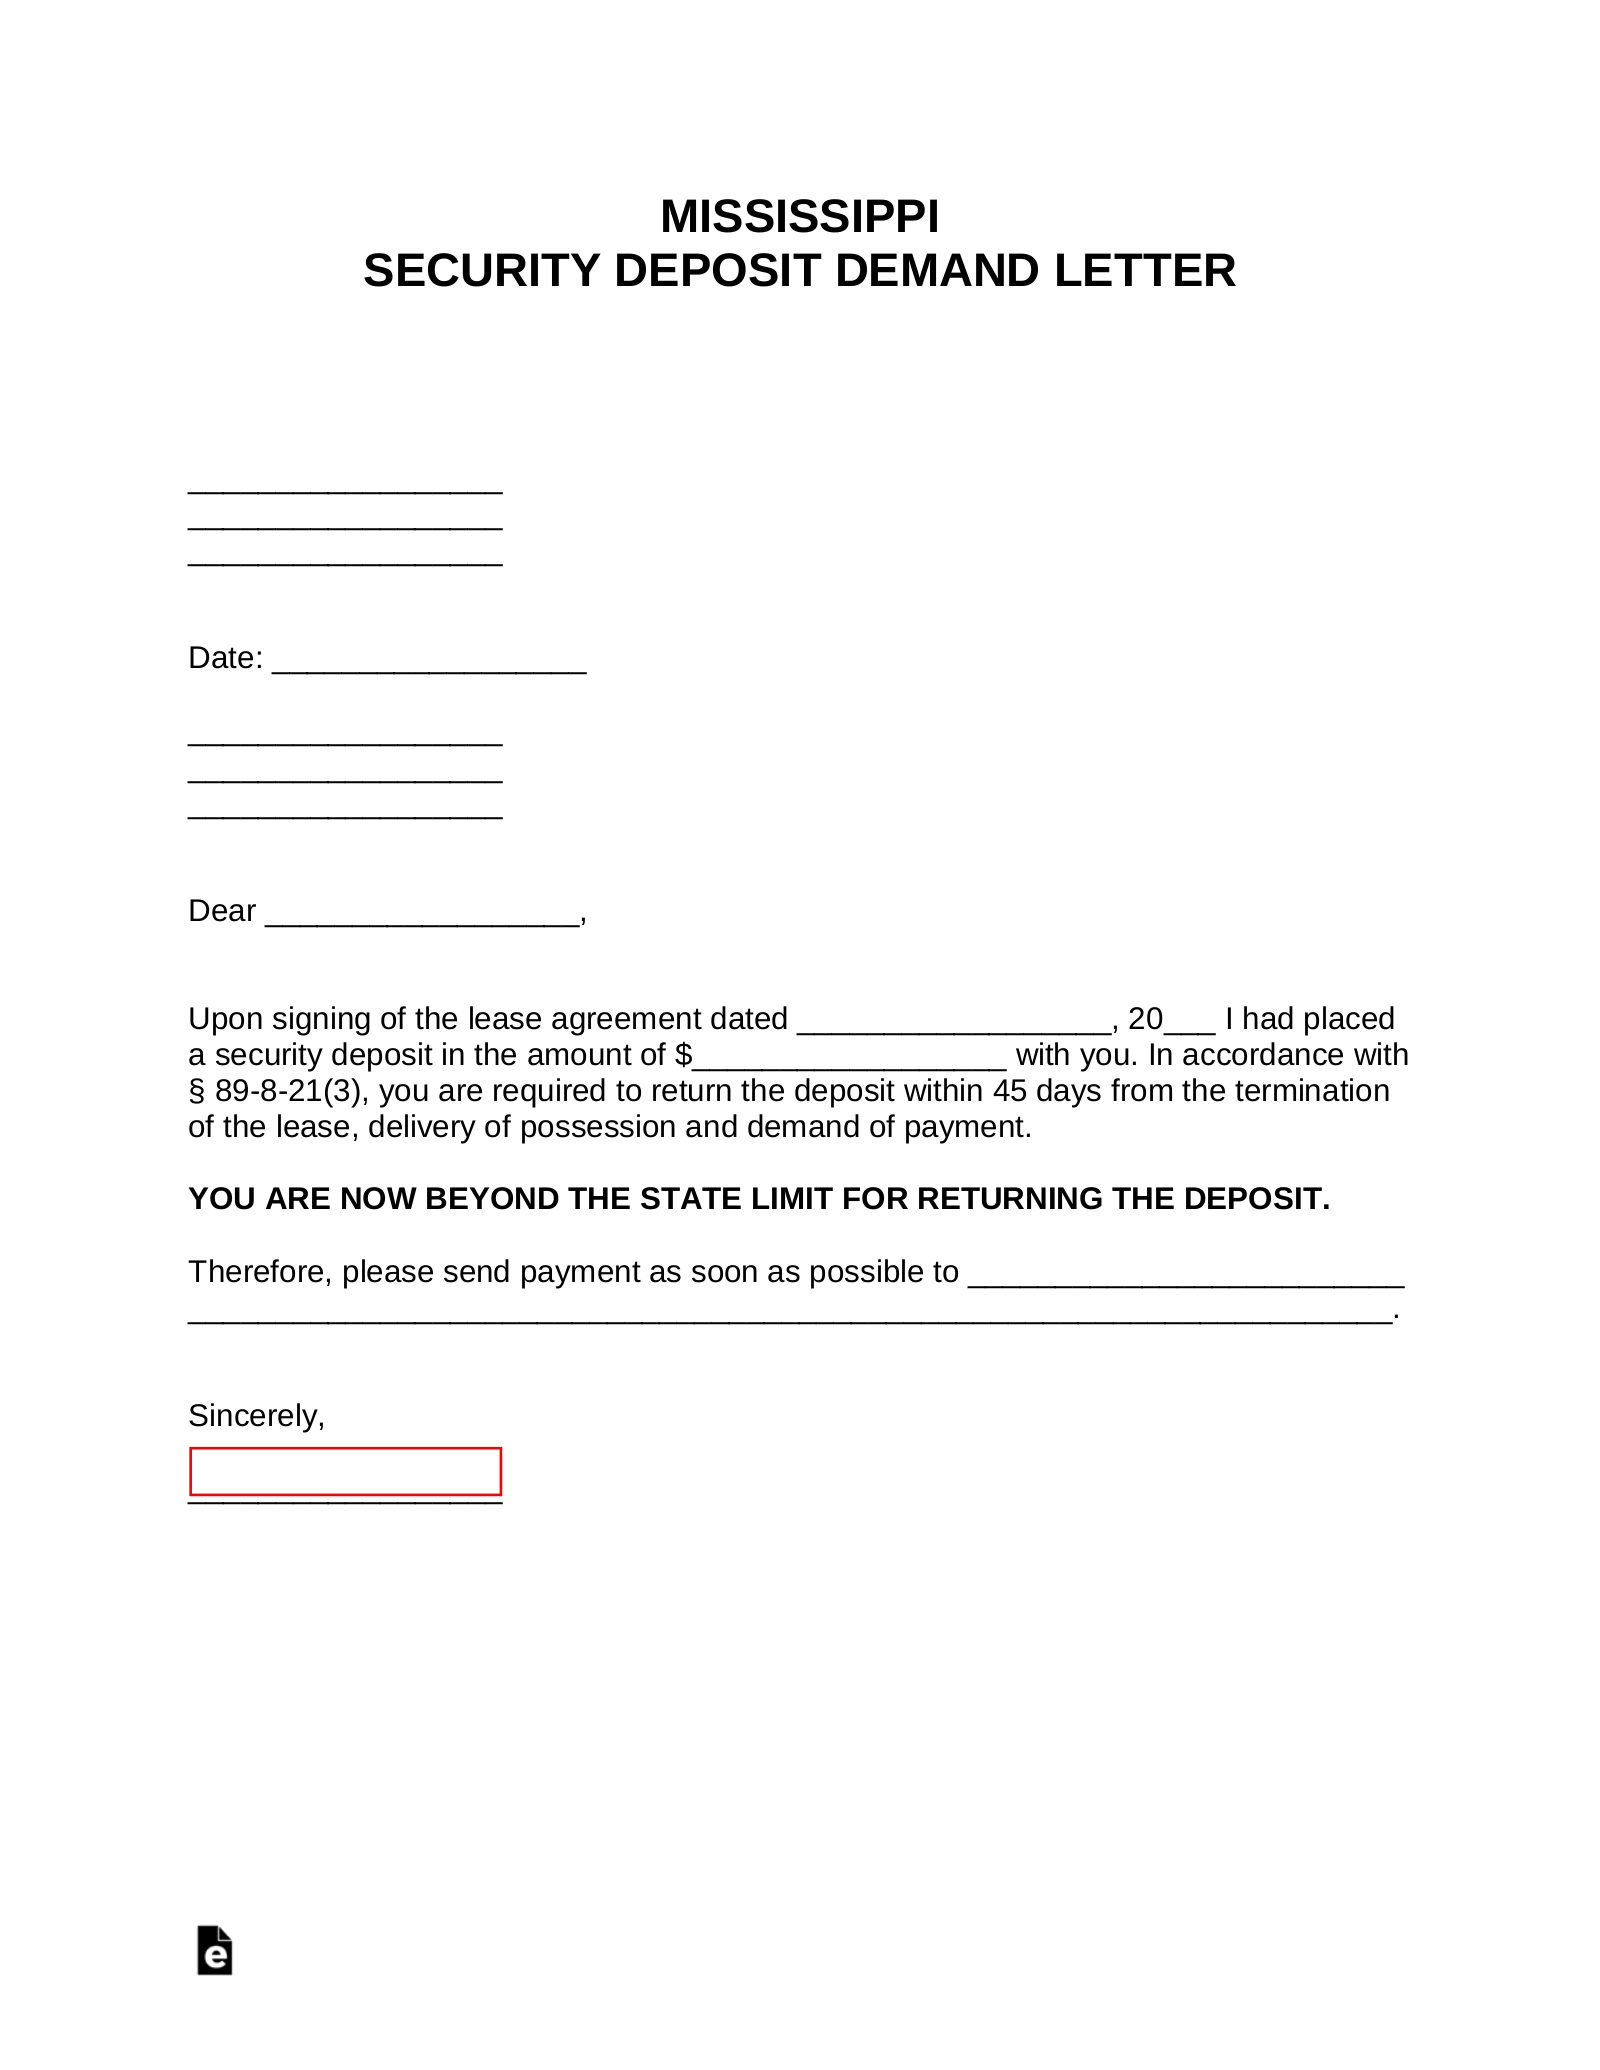 Mississippi Security Deposit Demand Letter